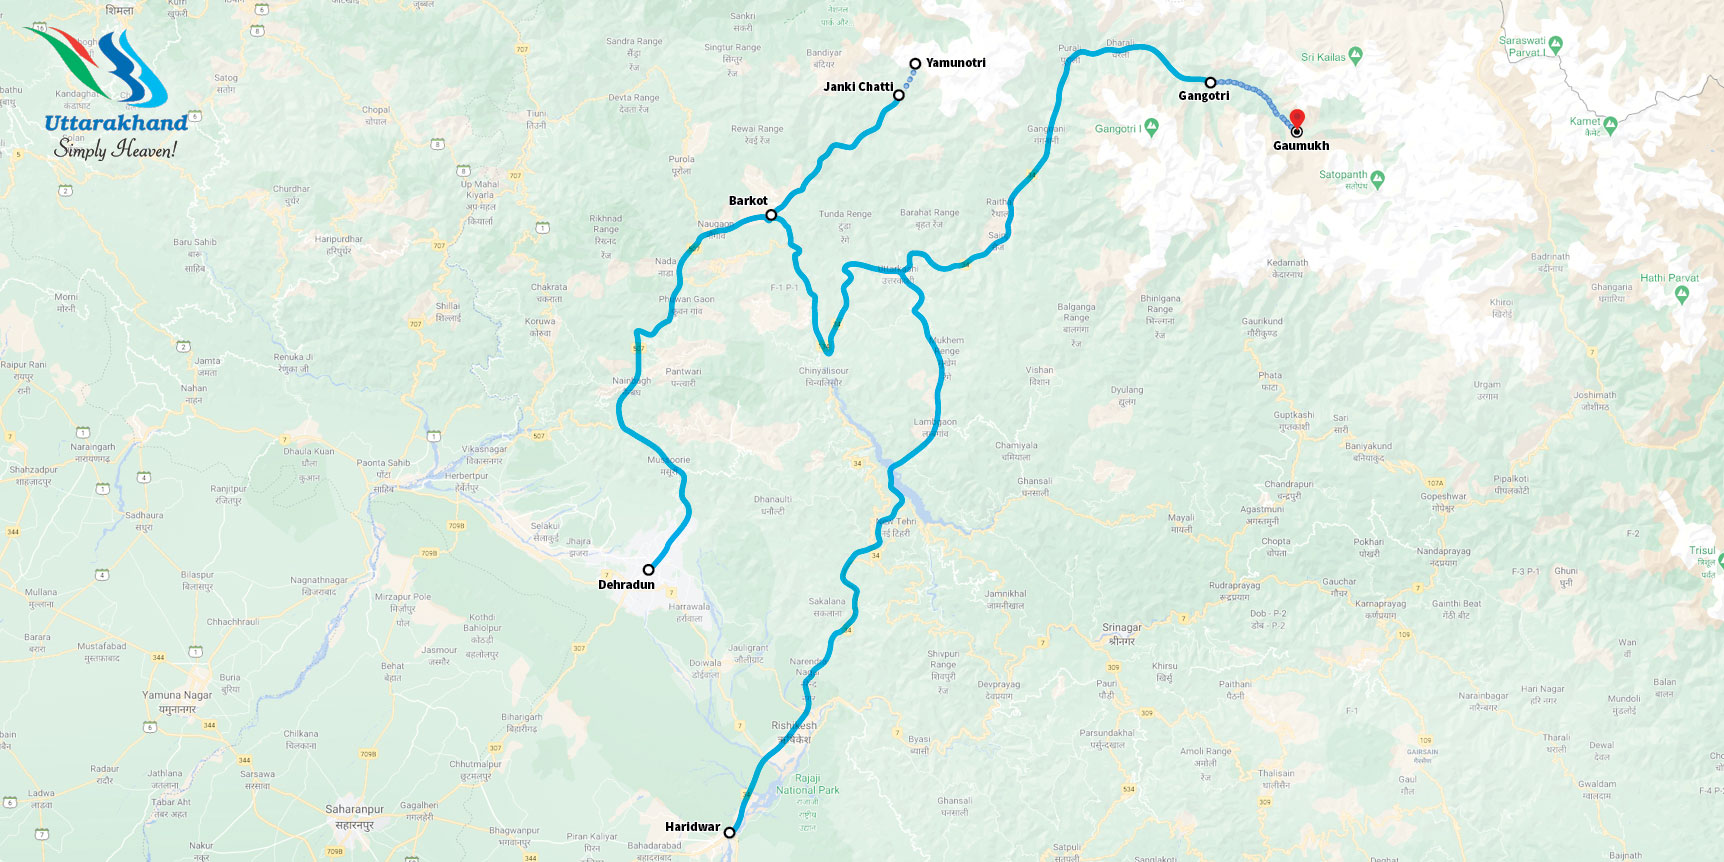 Google-map_Yamunotri-itinerary1